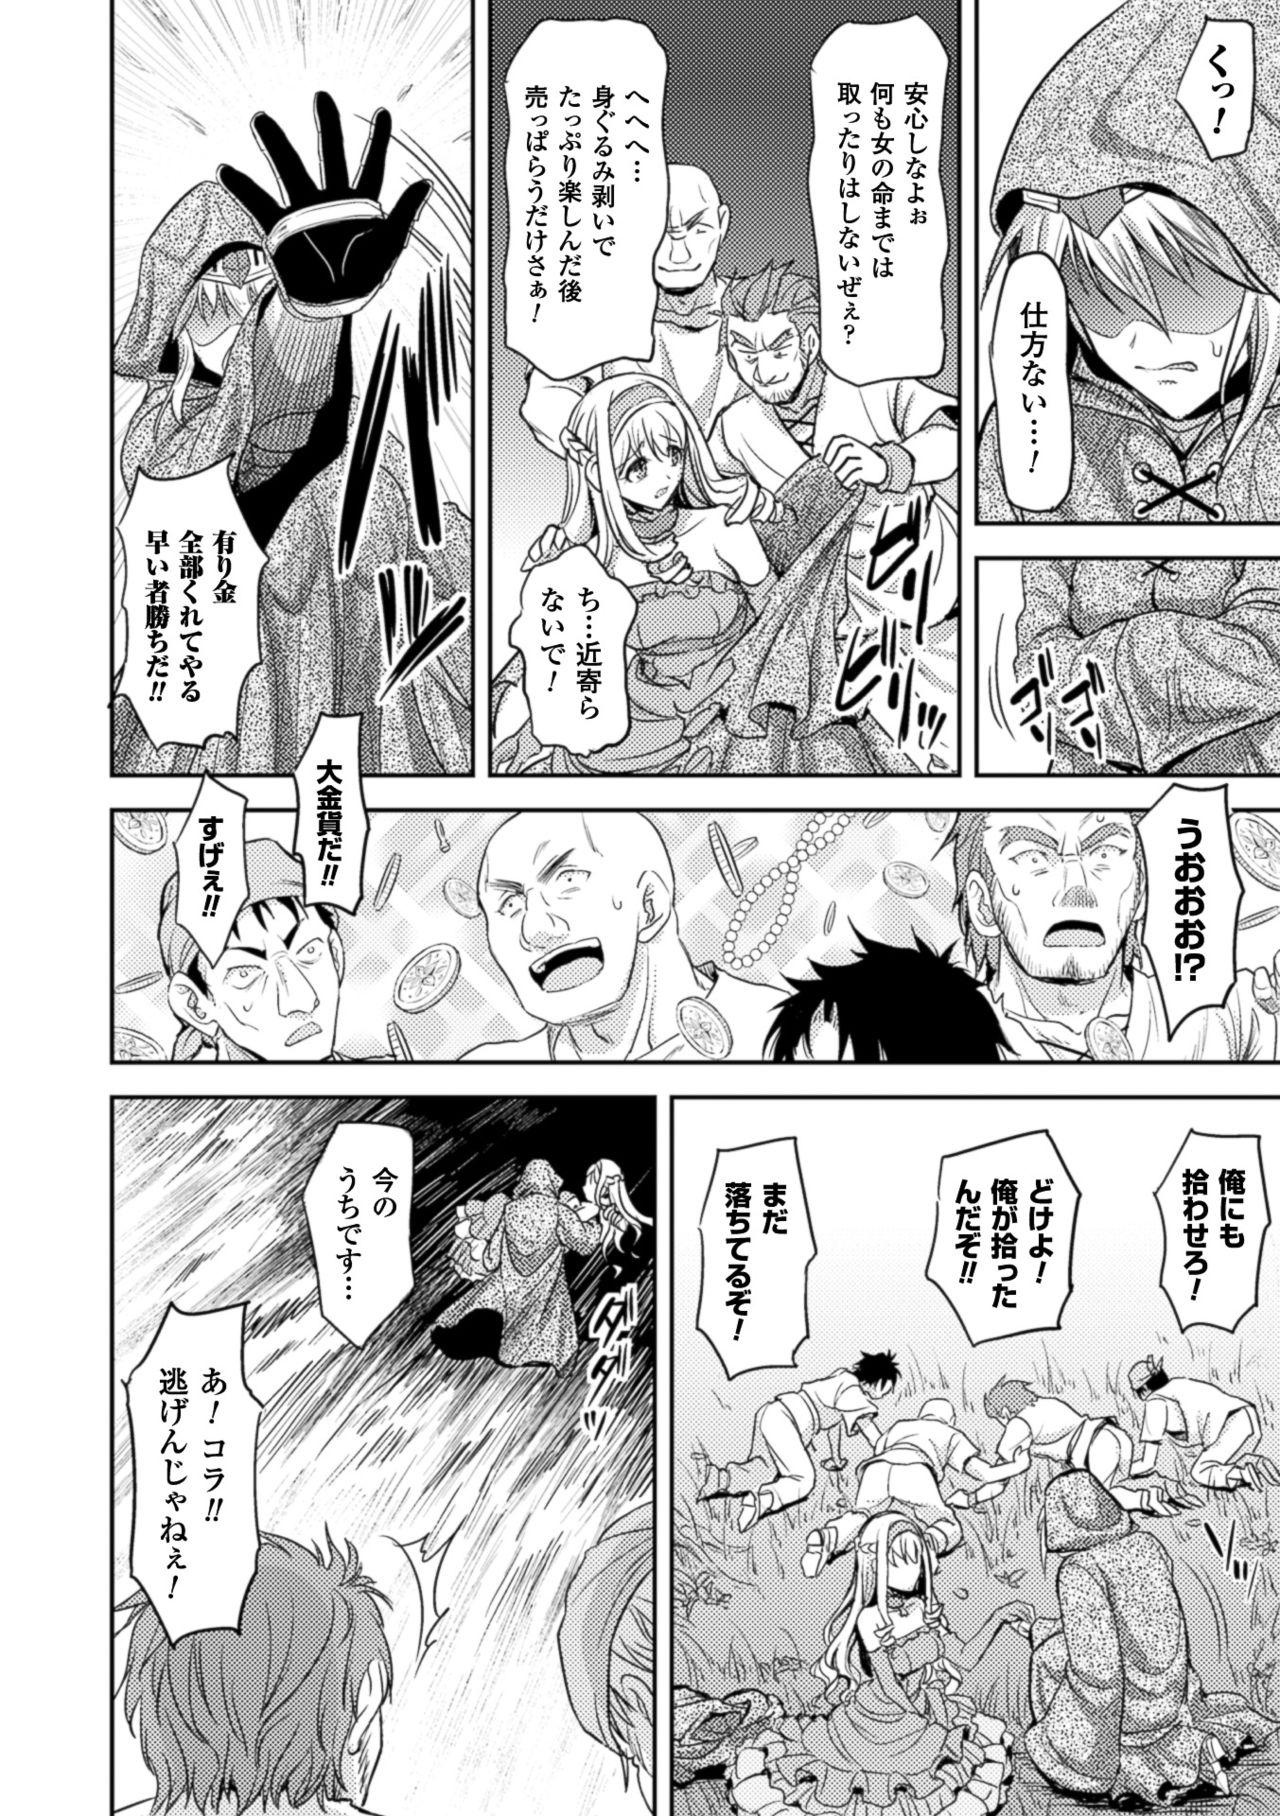 2D Comic Magazine Shokushu Kantsuu ni Mimodaeru Heroine-tachi Vol. 2 4